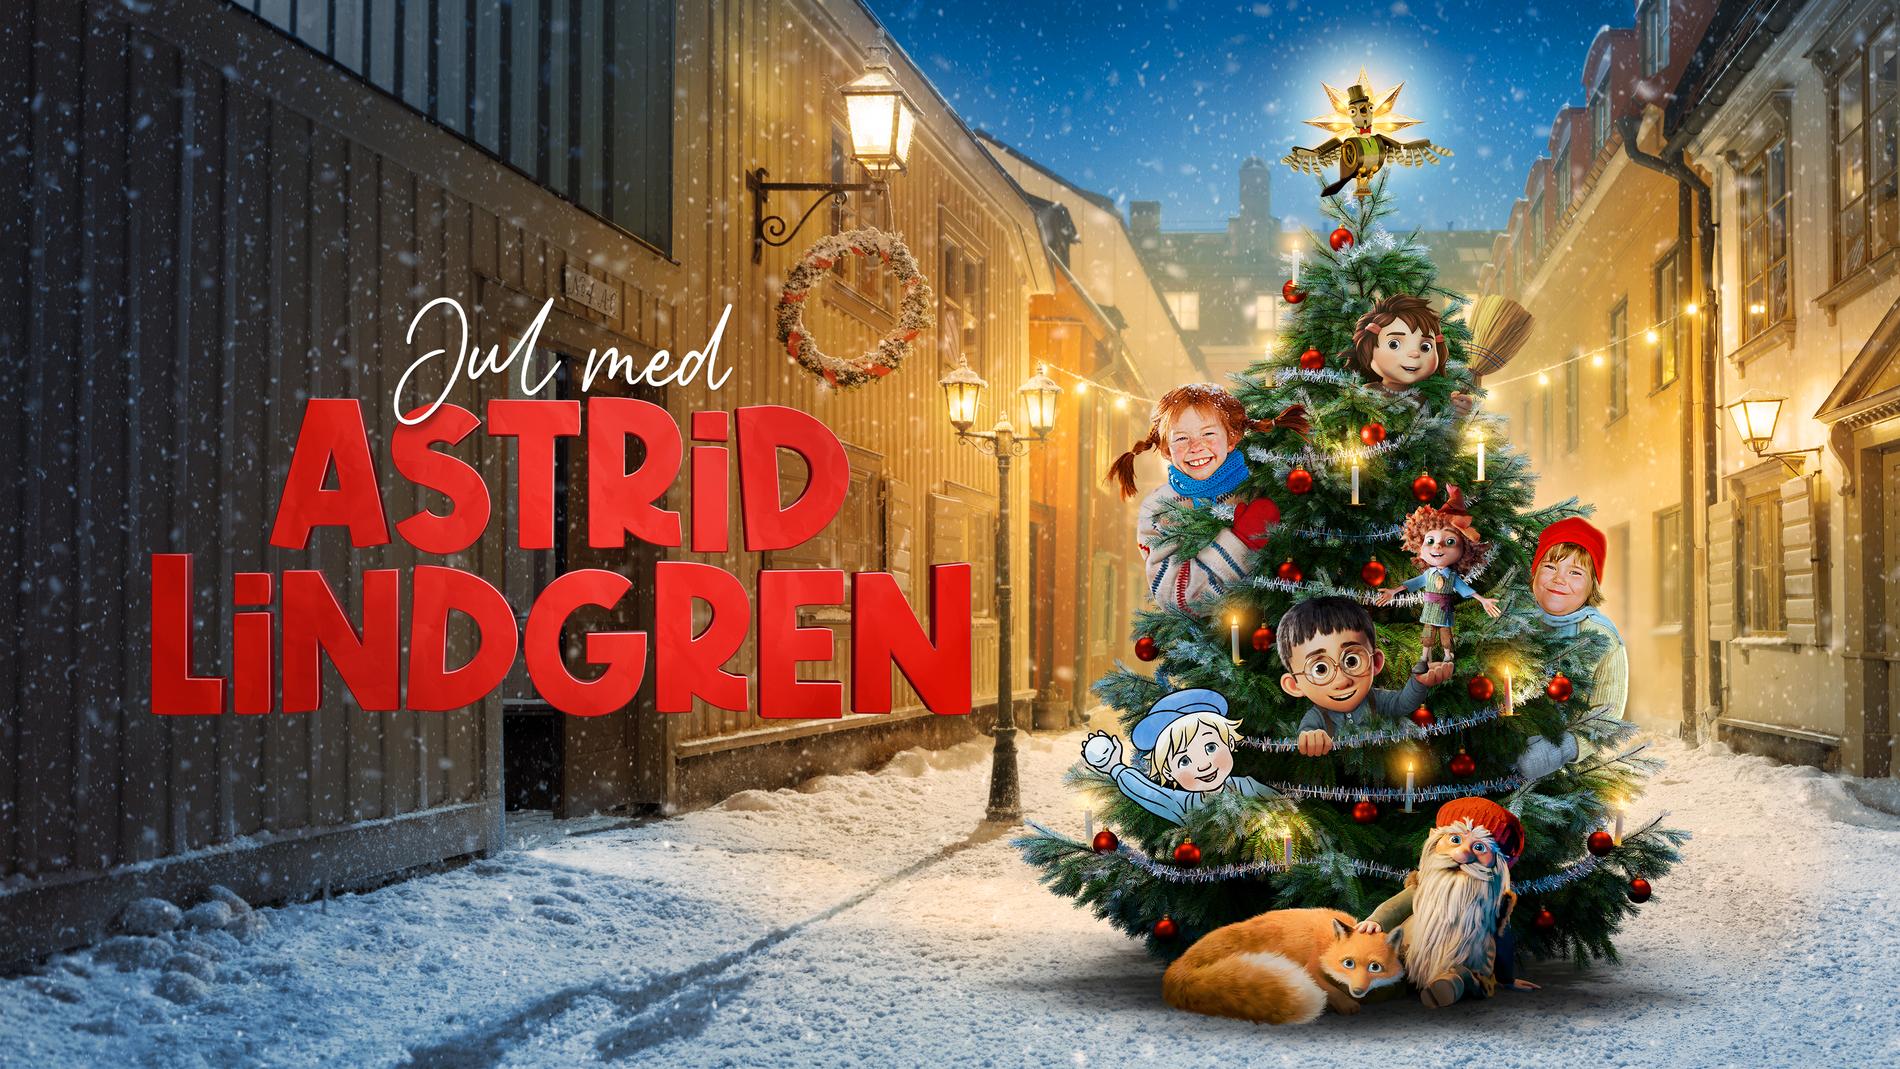 Jul med Astrid Lindgren.